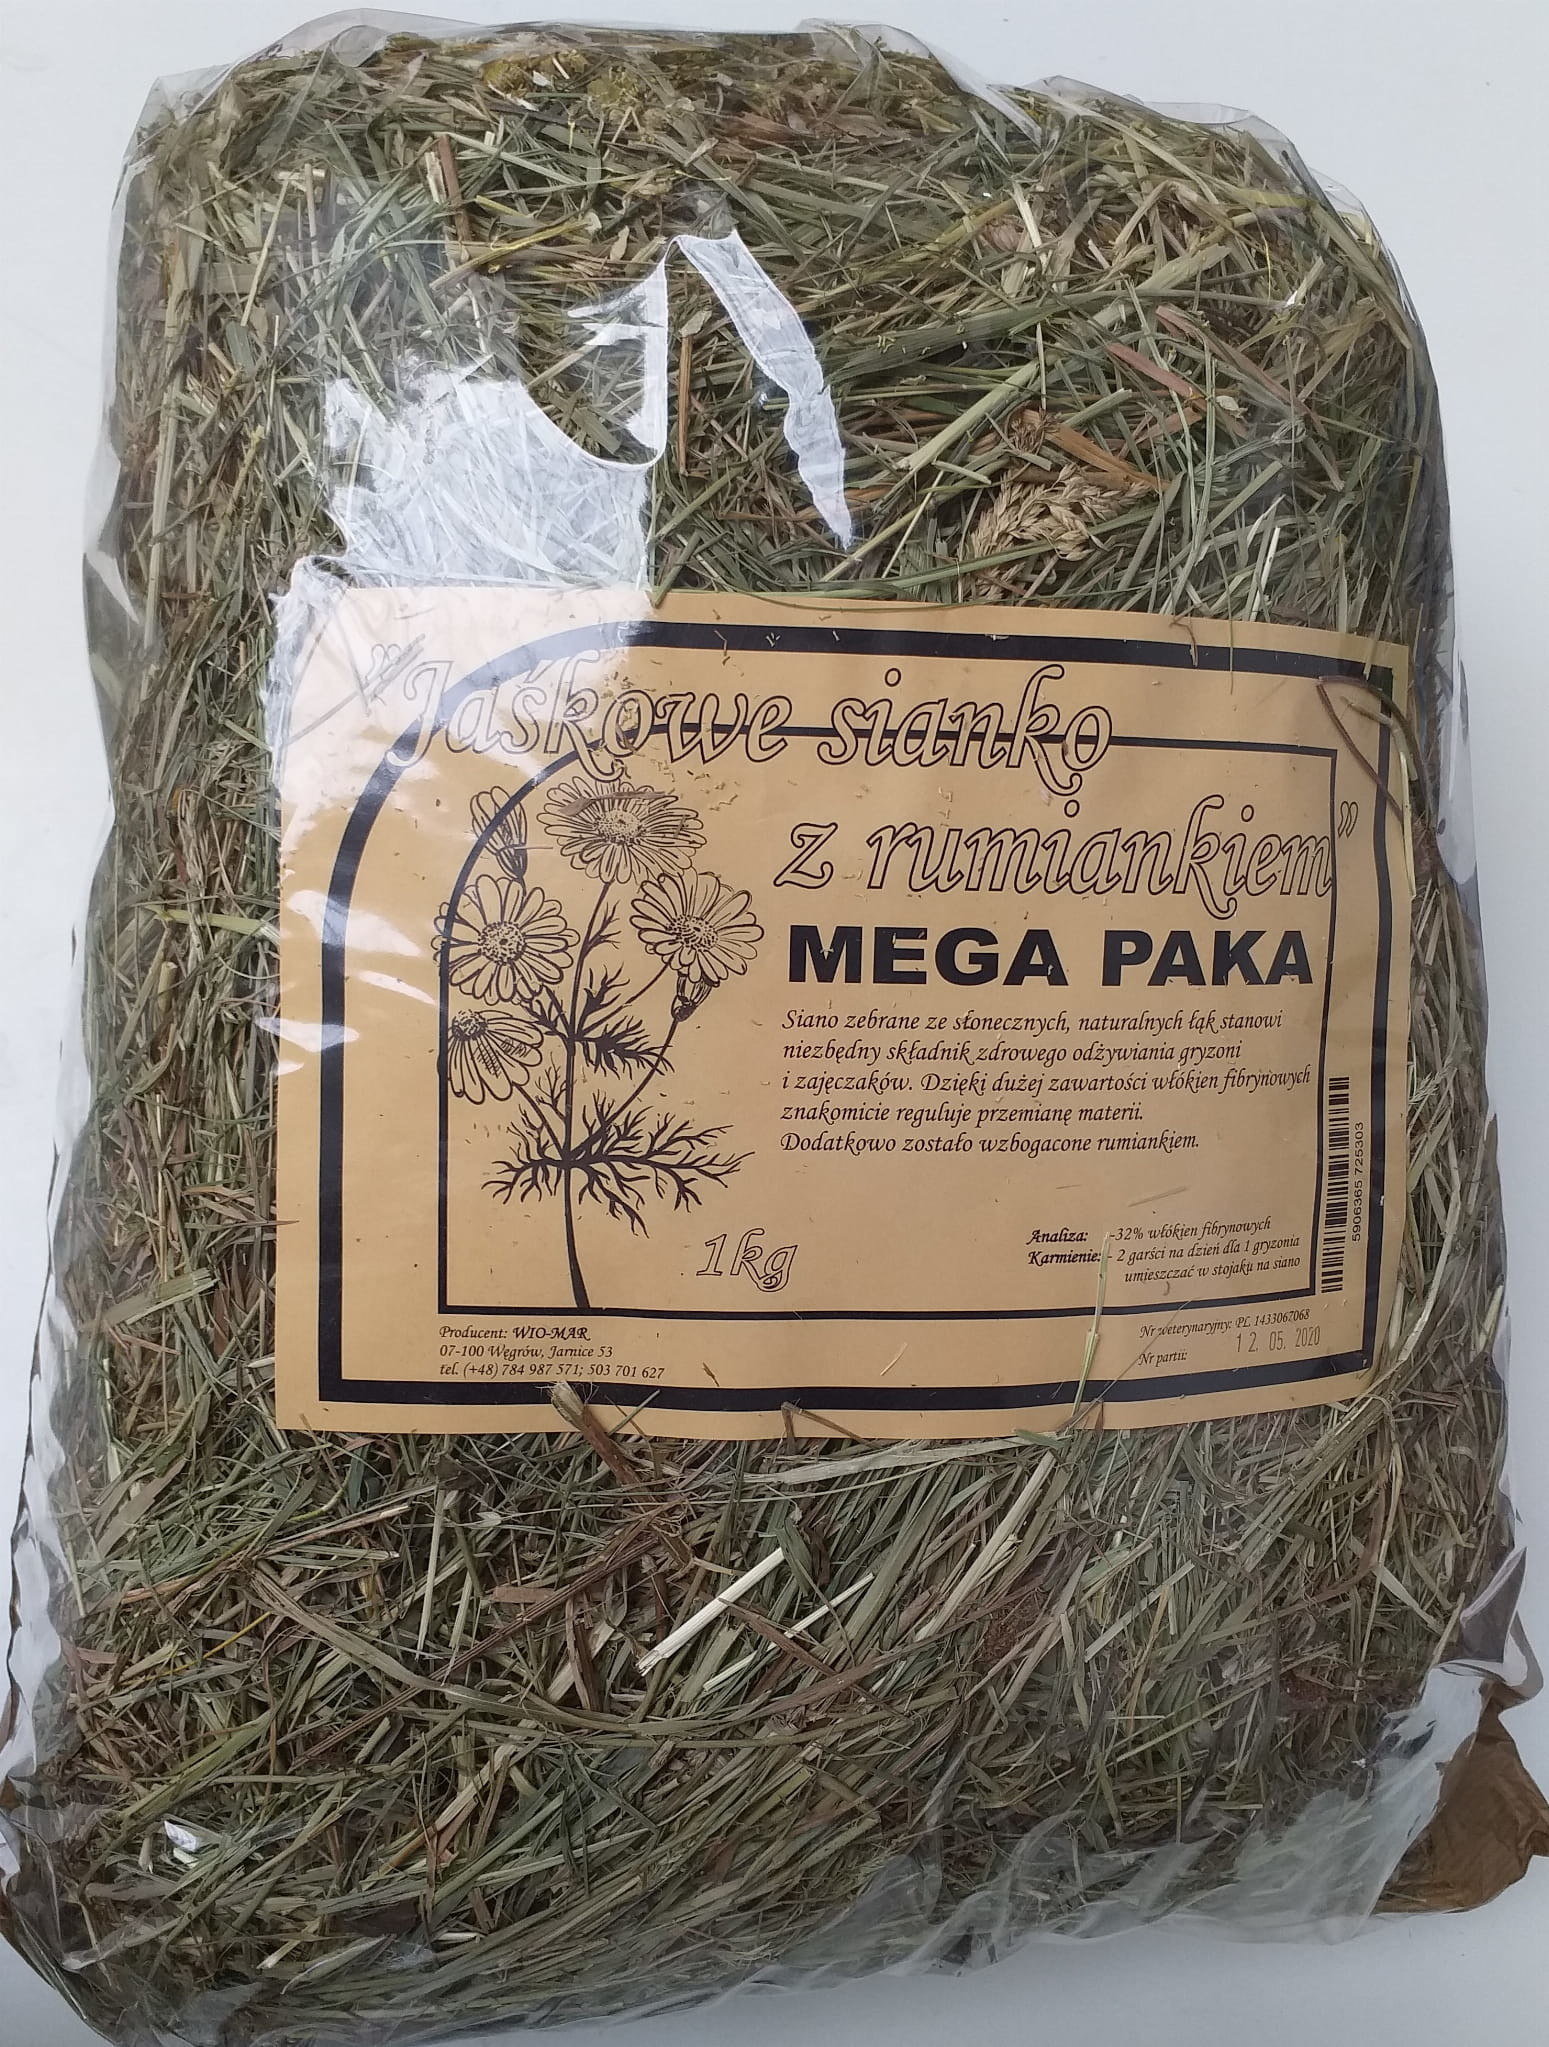 WIO-MAR WIO-MAR Jaśkowe sianko z rumiankiem Mega Paka 1kg